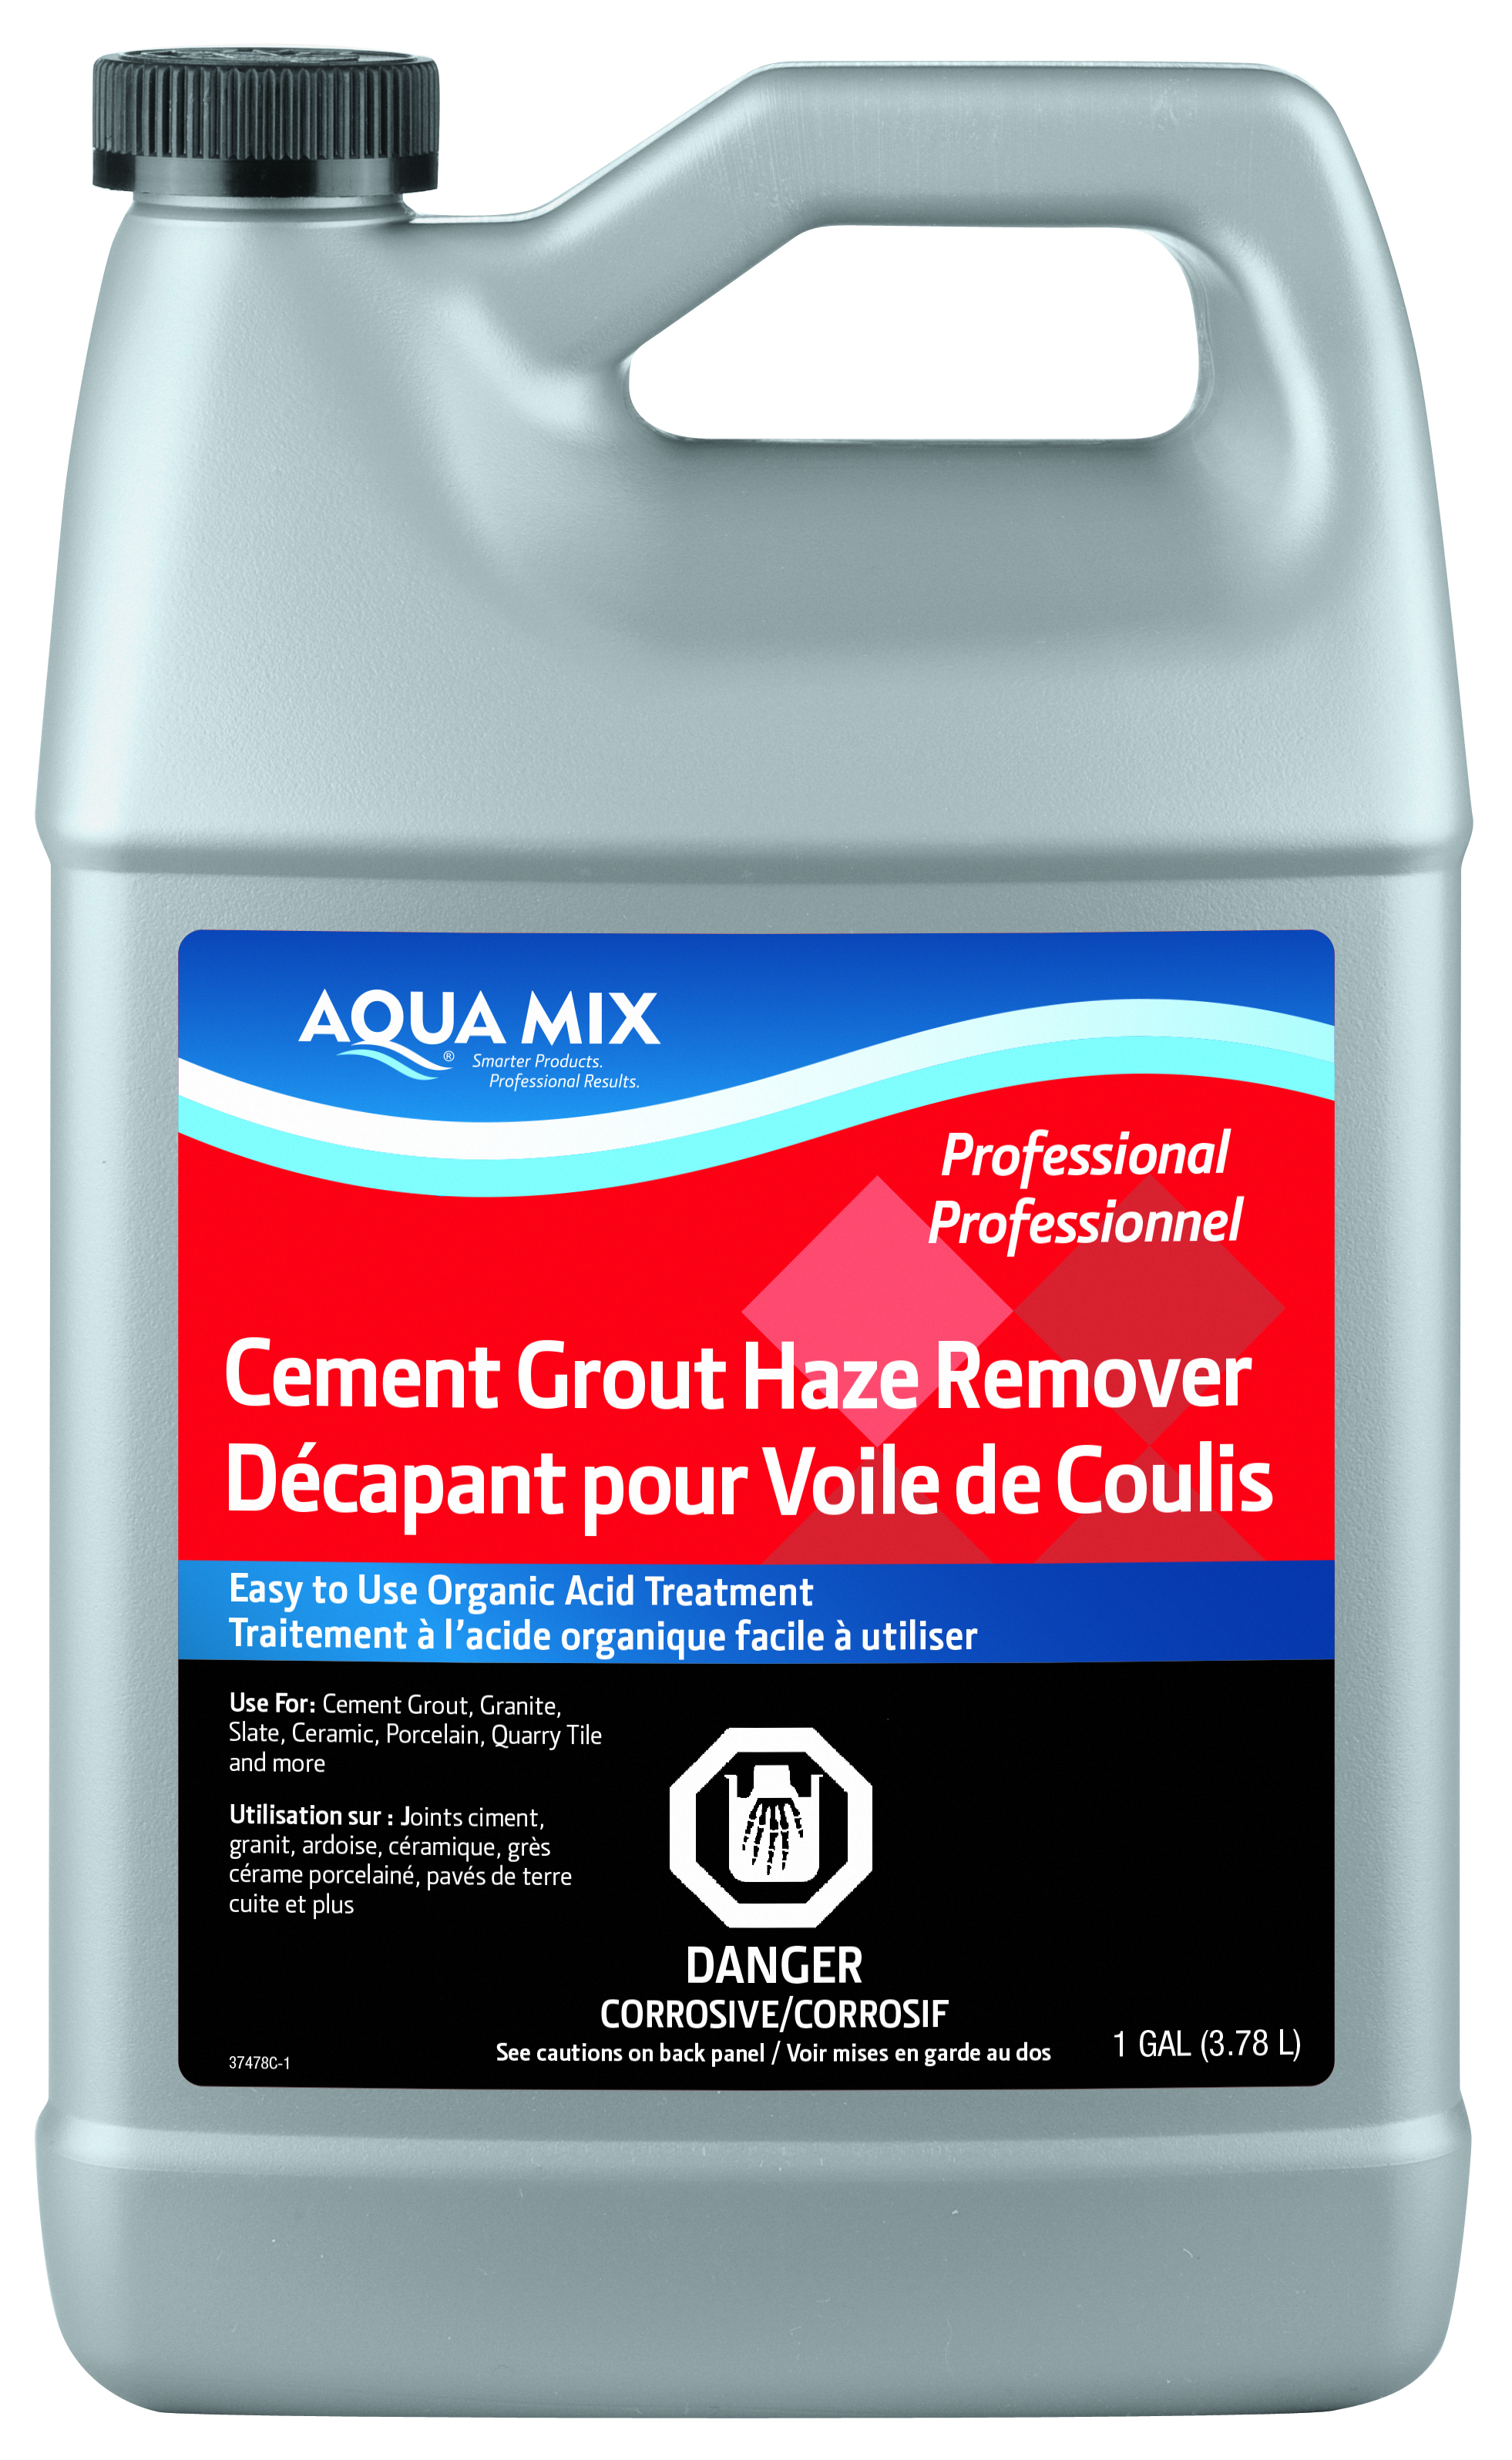 Aqua Mix (C050163) product